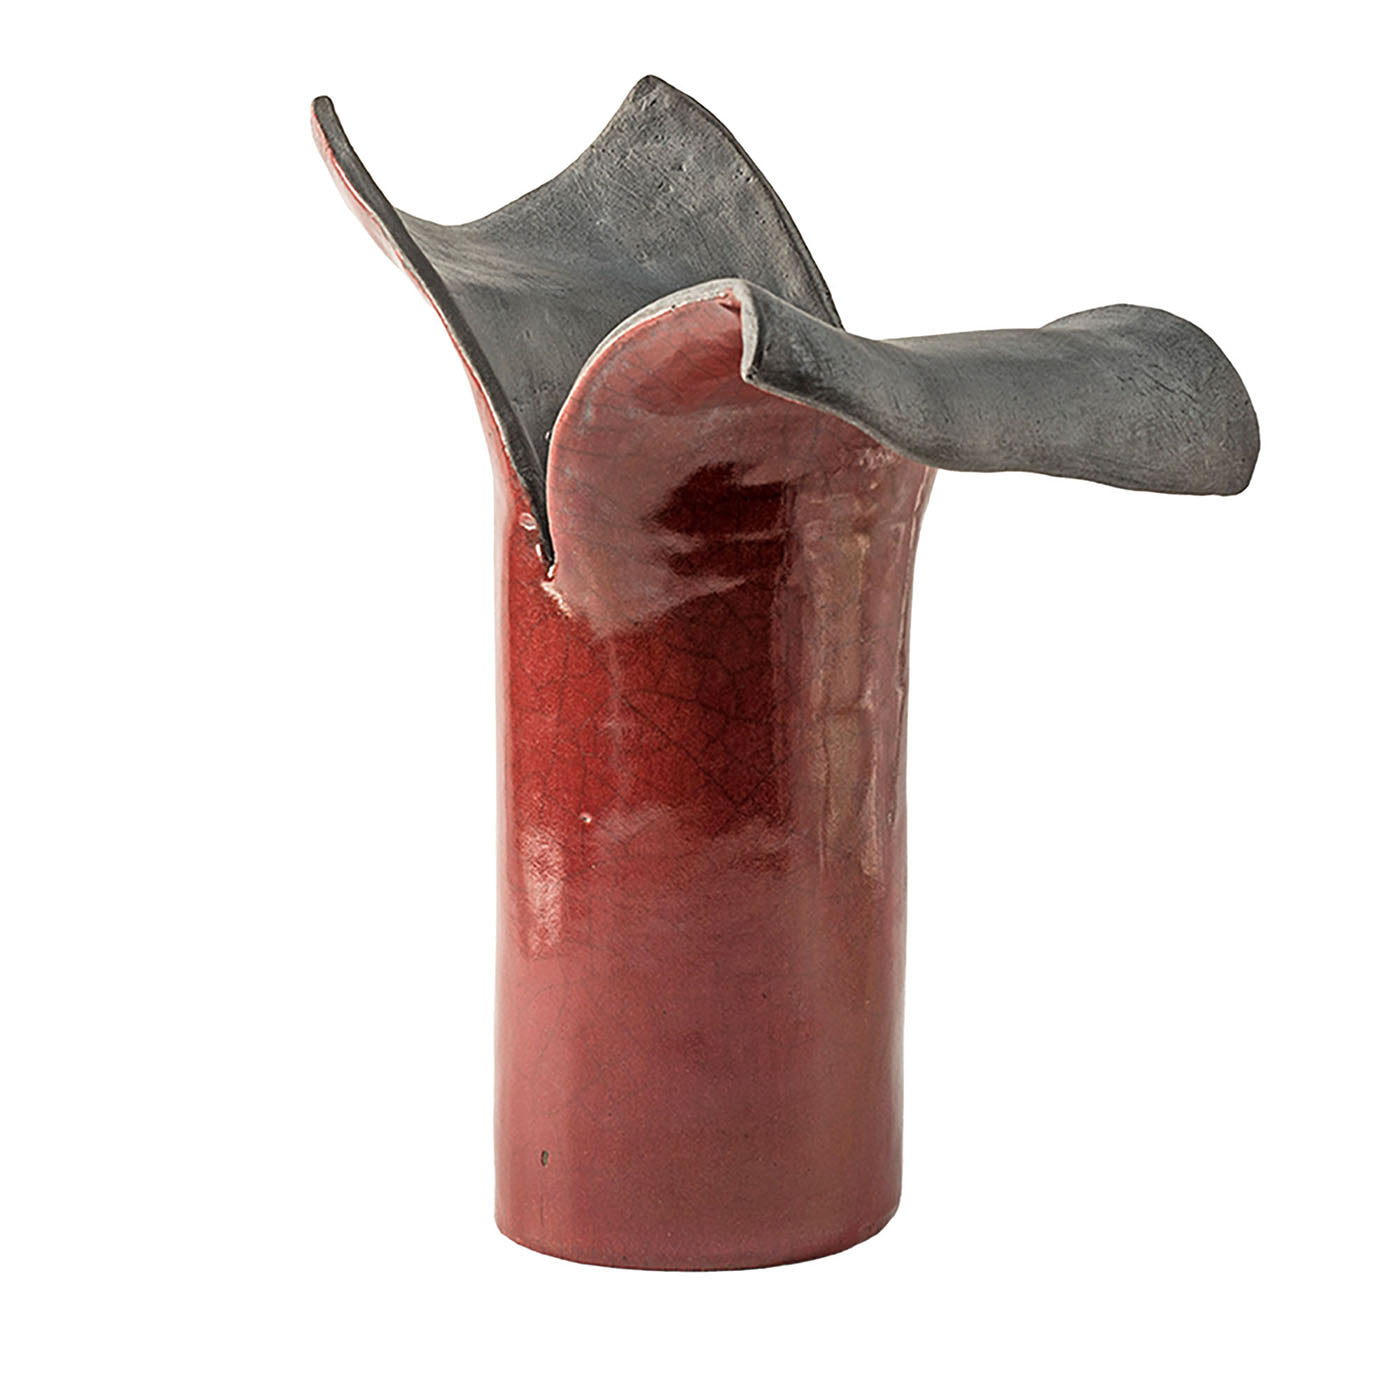 Petali D'Oriente Amaranth Keramik-Skulptur/Vase von Nino Basso - Hauptansicht